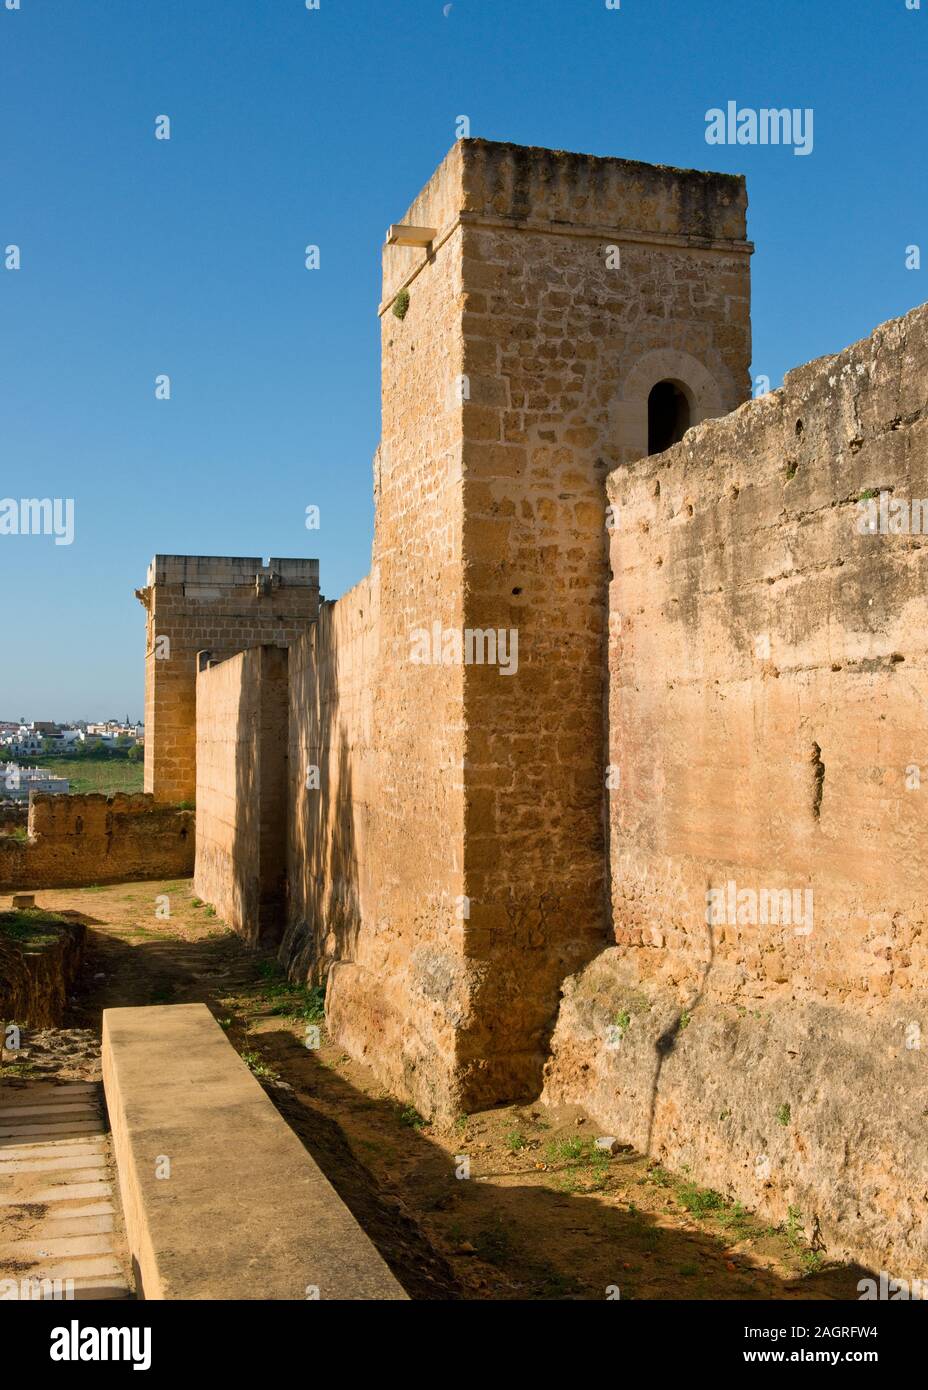 Castillo de Alcalá de Guadaíra. Castle fortress. Andalusia, Southern Spain, Europe Stock Photo